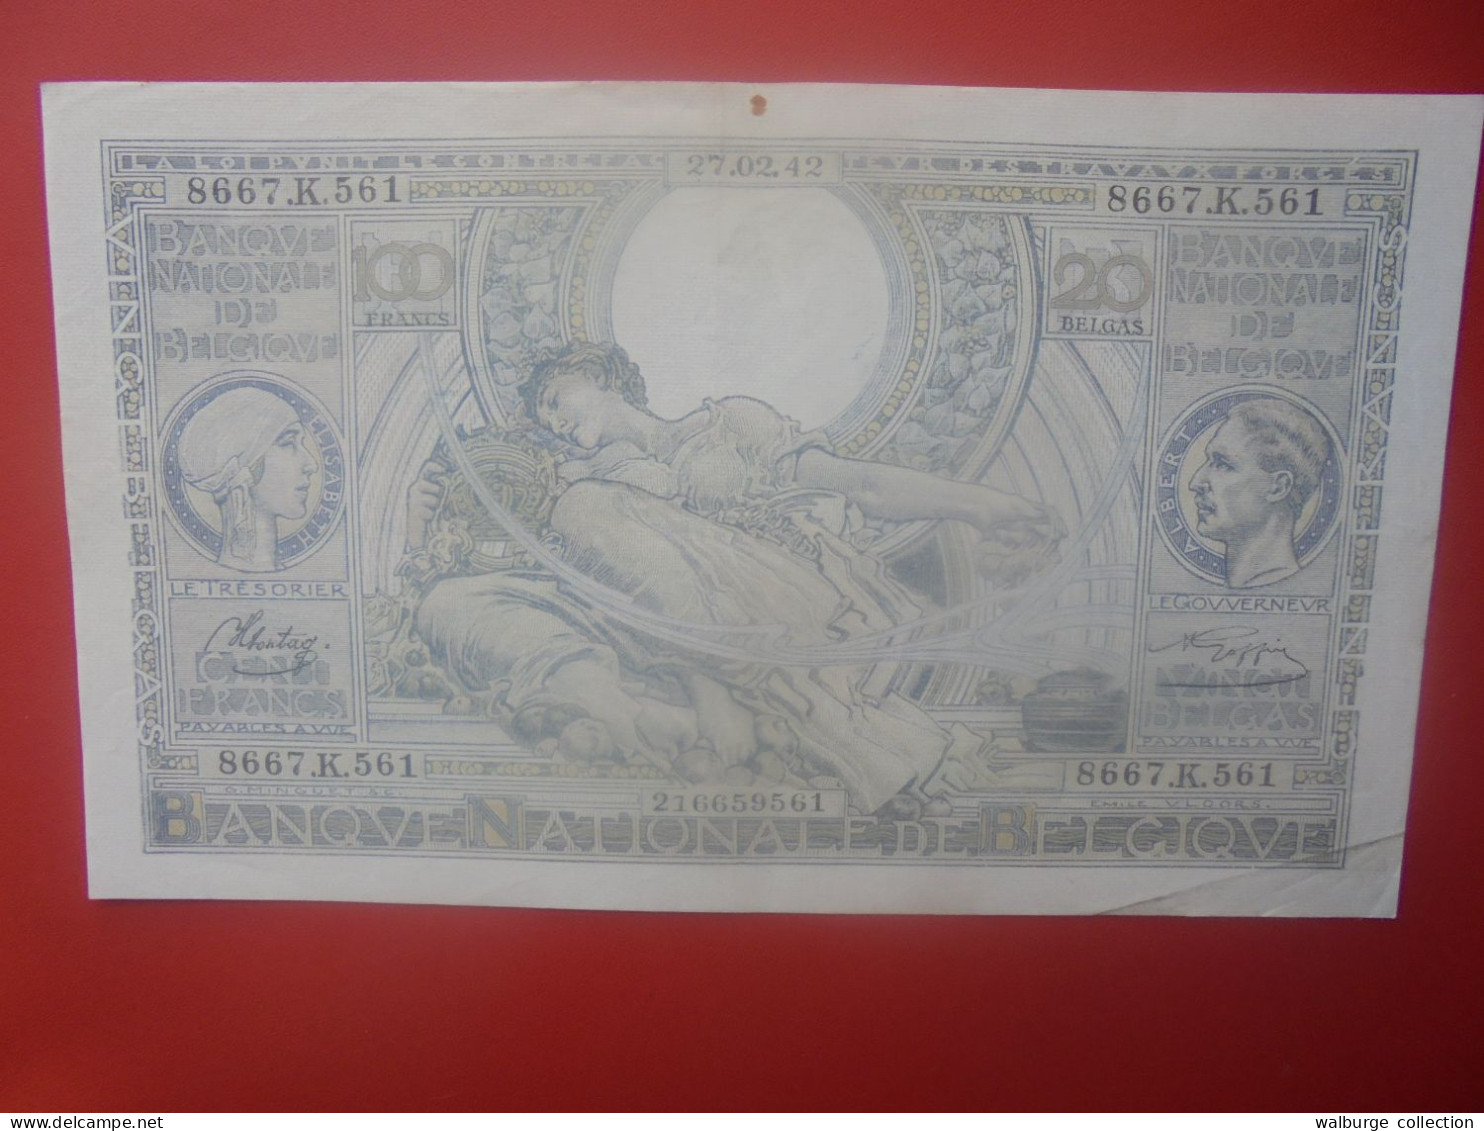 BELGIQUE 100 Francs 1942 Circuler COTES:5-10-25 EURO (B.33) - 100 Francos & 100 Francos-20 Belgas